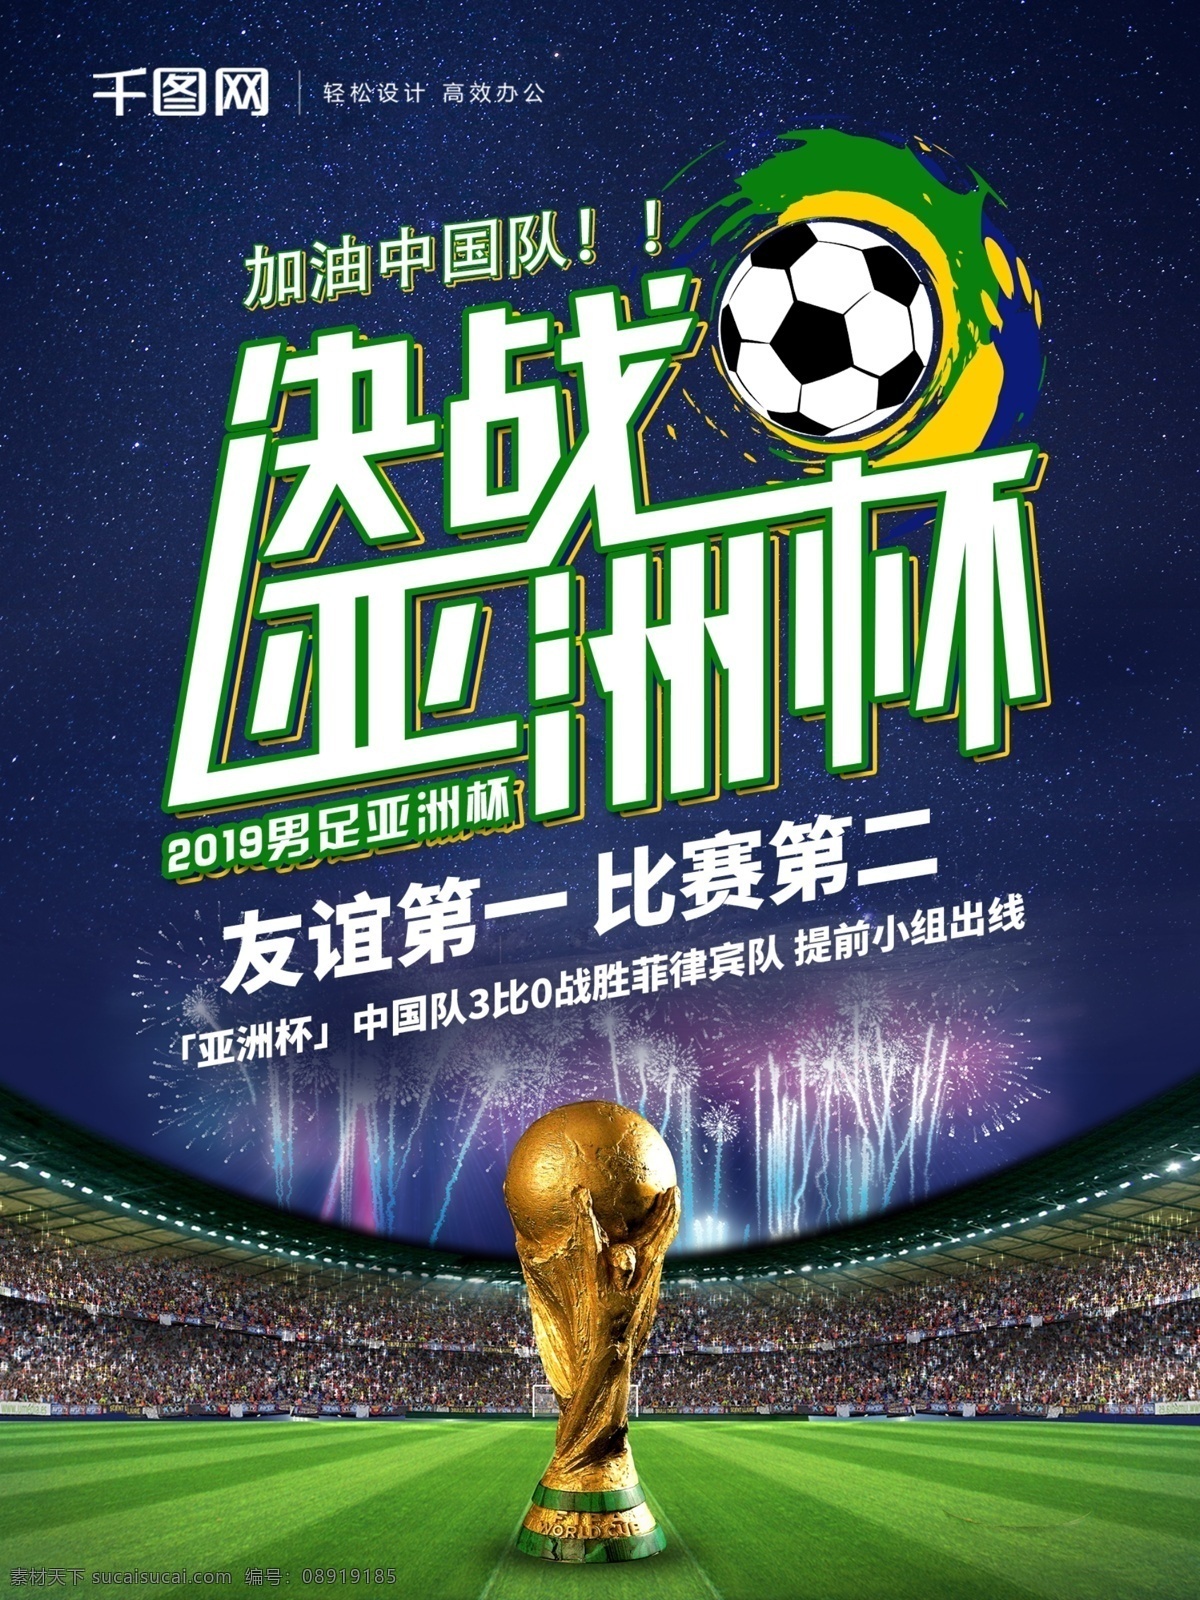 原创 决战 亚洲杯 足球 宣传海报 宣传 体育 创意字体设计 决战亚洲杯 海报